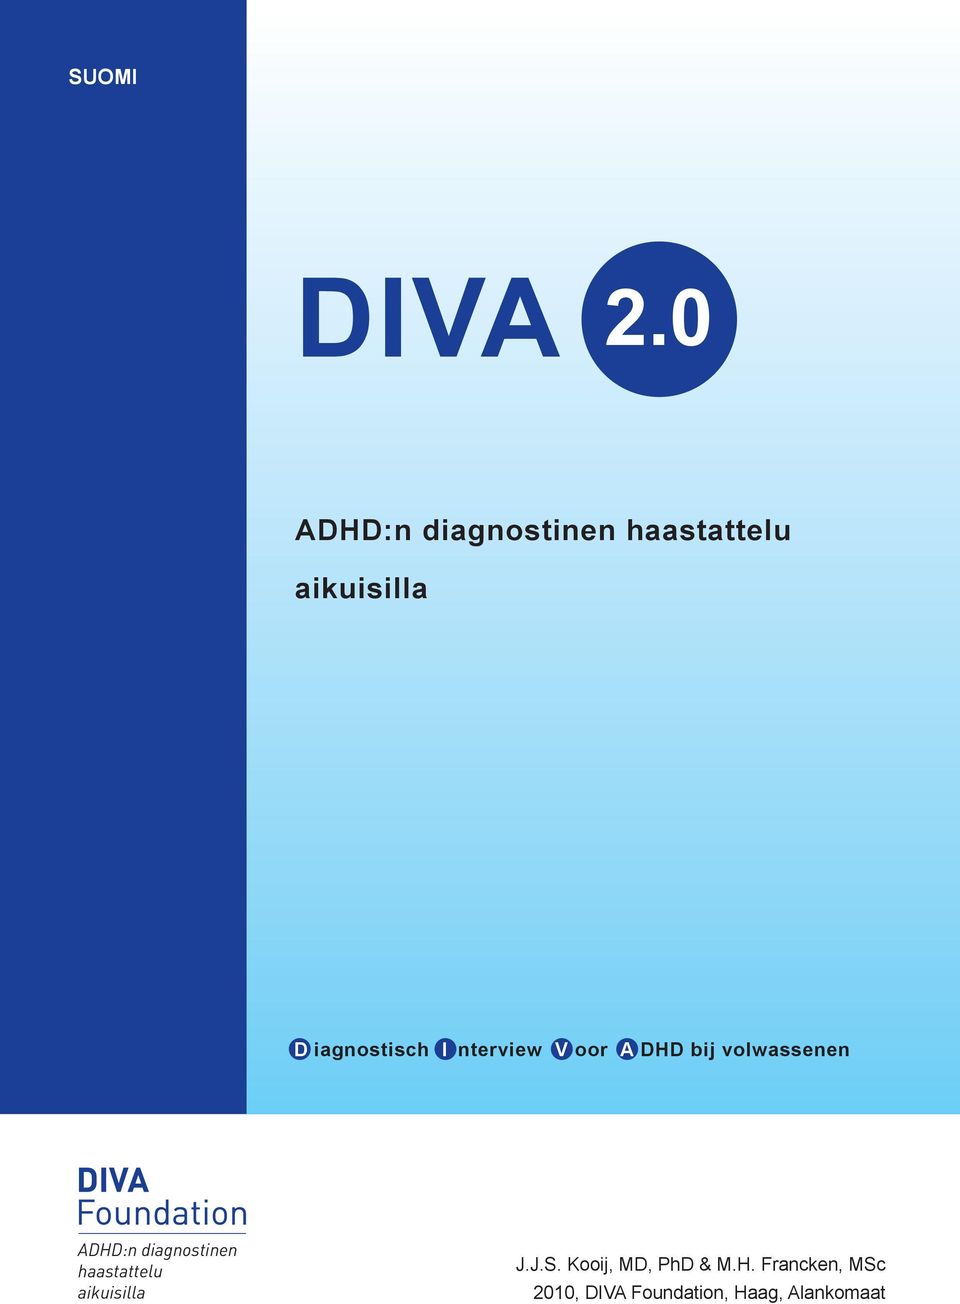 I nterview V oor A DHD bij volwassenen ADHD:n diagnostinen